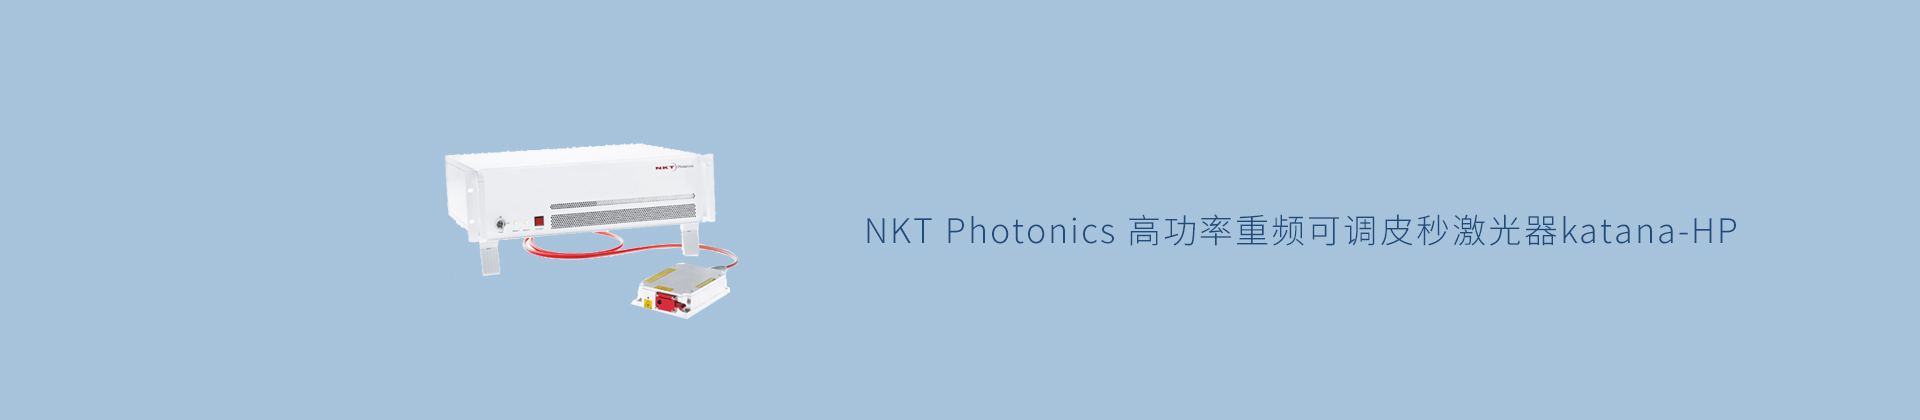 NKT Photonics 高功率重频可调皮秒激光器katana-HP